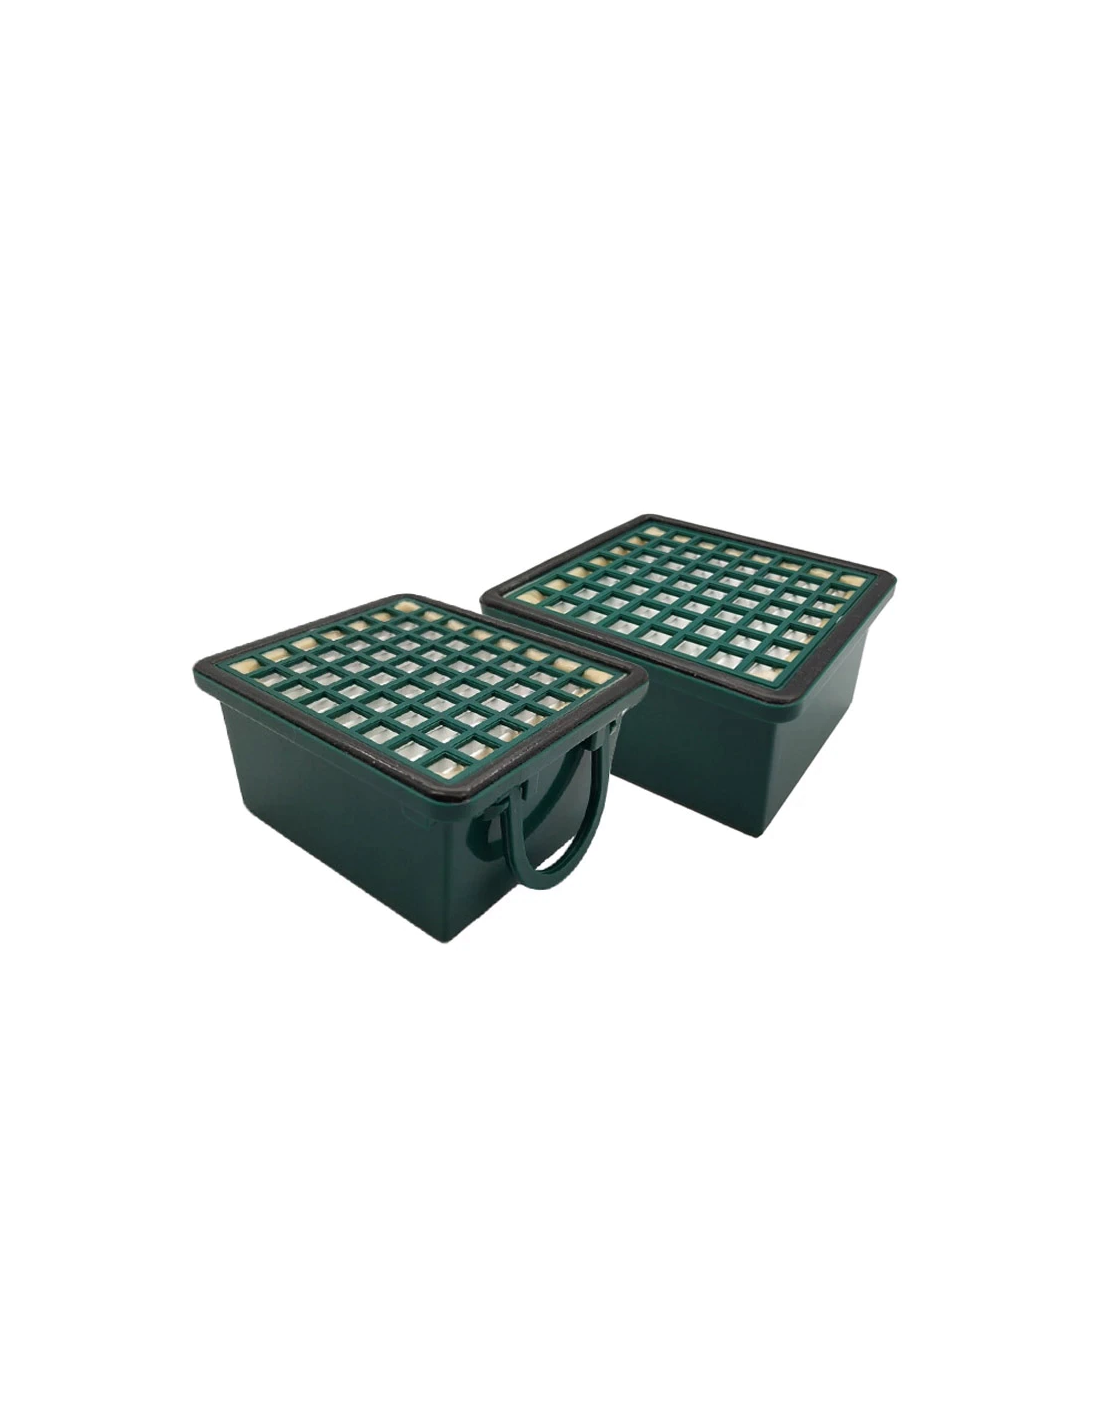 Box convenienza sacchetti e filtri per Folletto VK 130 VK 131 - PACK BASIC